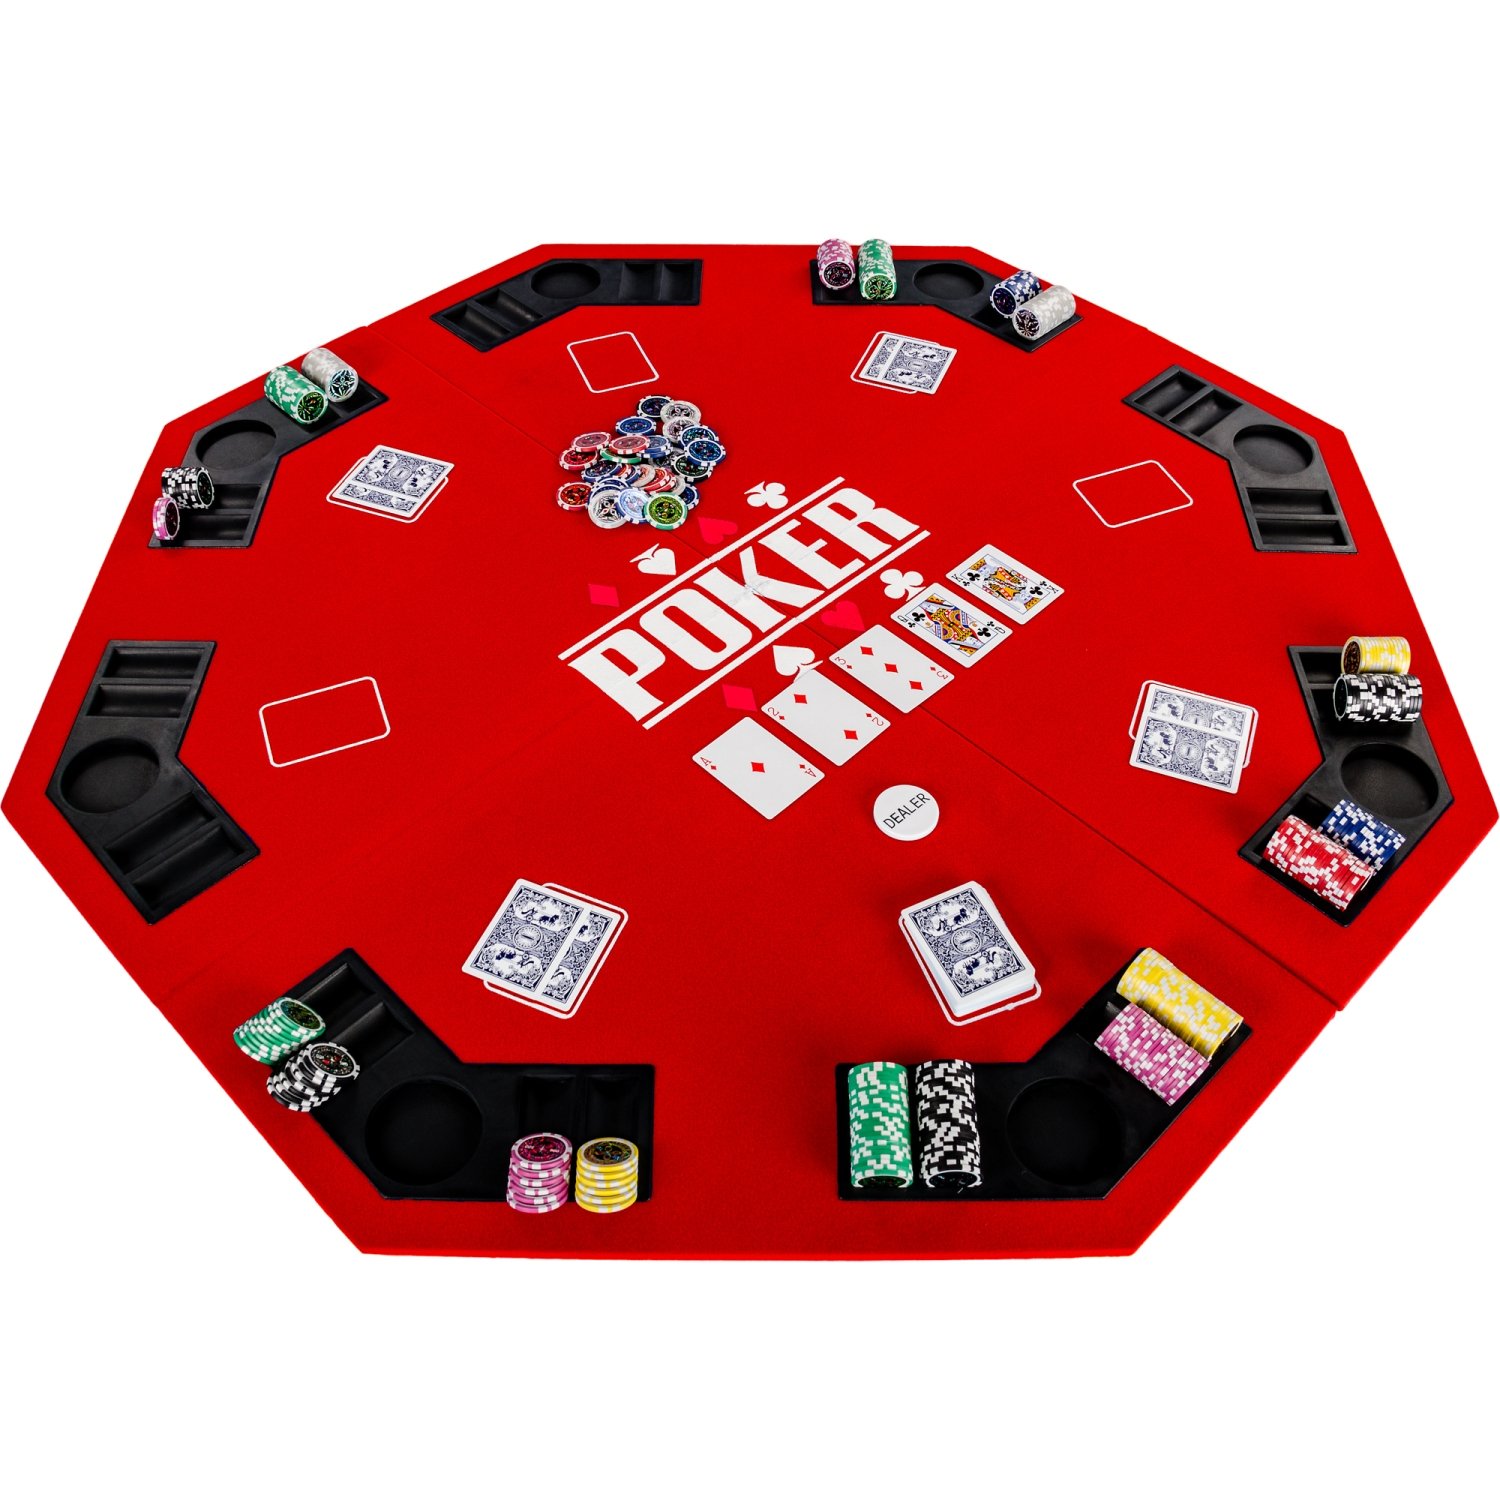 GAMES PLANET Faltbare Pokerauflage „Full House“ für bis zu 8 Spieler, achteckig, Maße 120x120 cm, MDF Platte, 8 Getränkehalter, 8 Chiptrays, rot